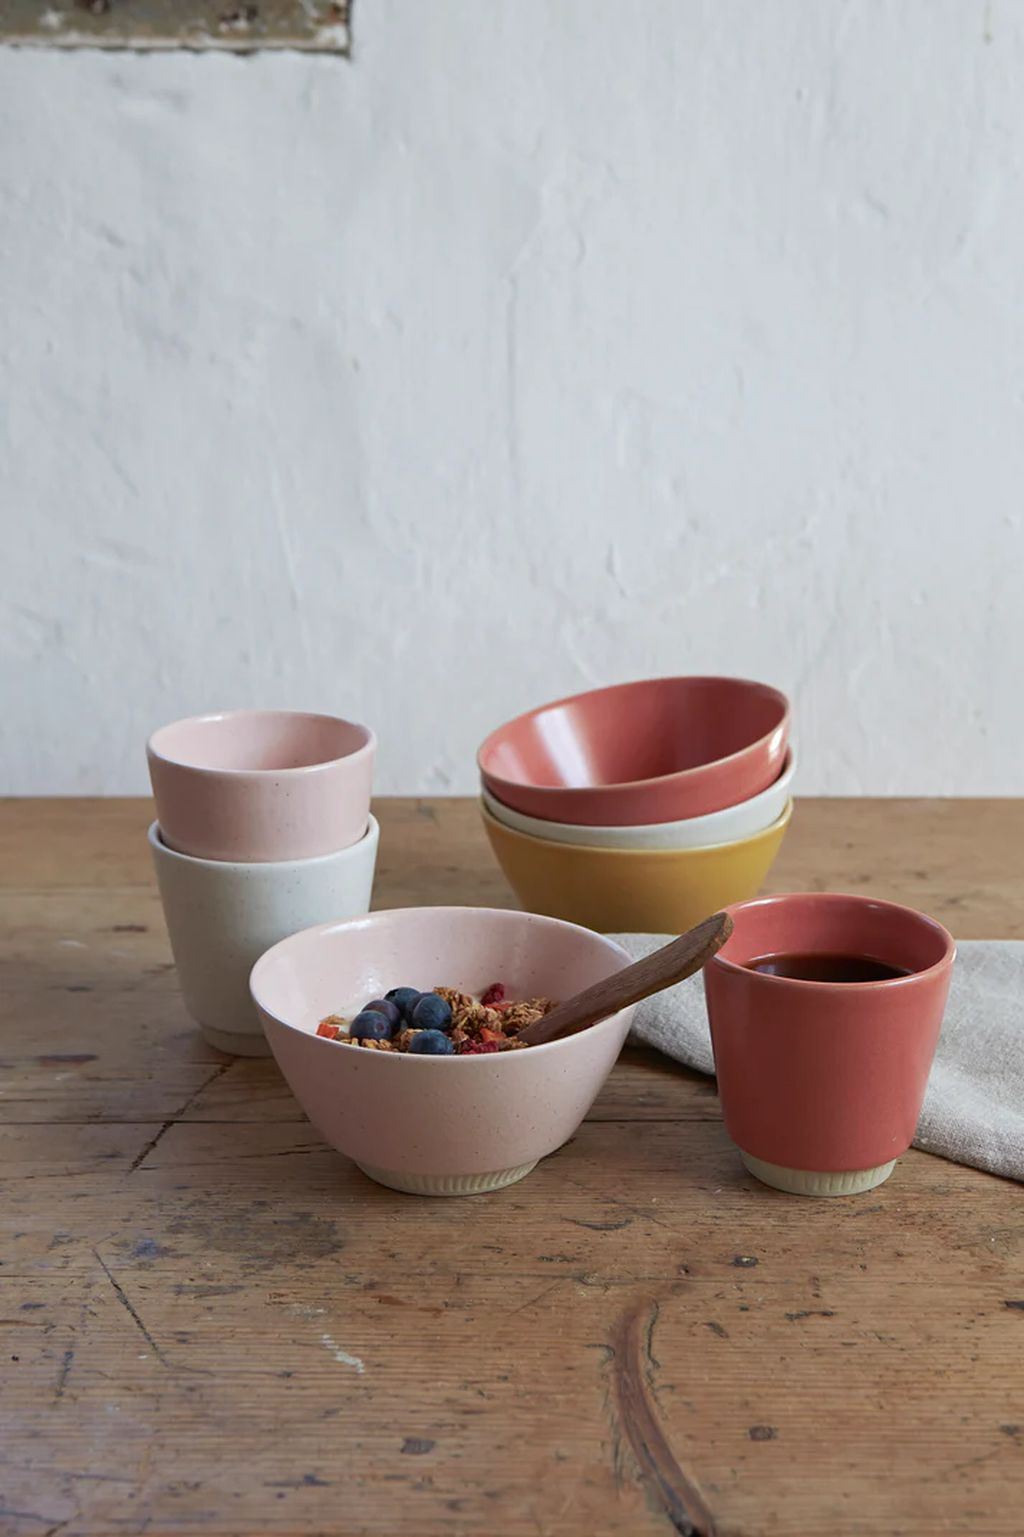 Knabstrup Keramik Colorite Bowl ø 14 Cm, Pink